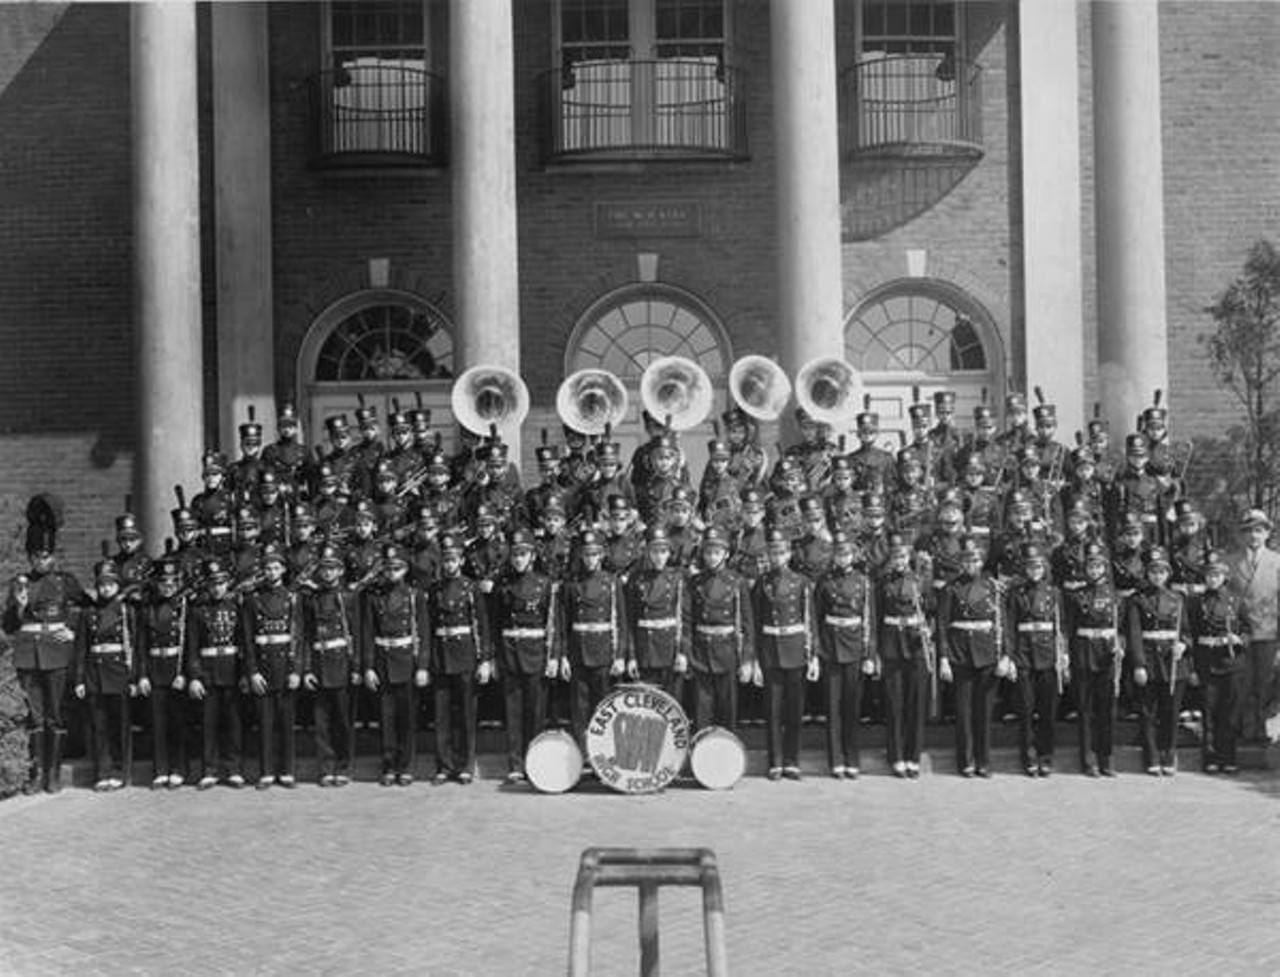  Shaw High School Band, 1938 